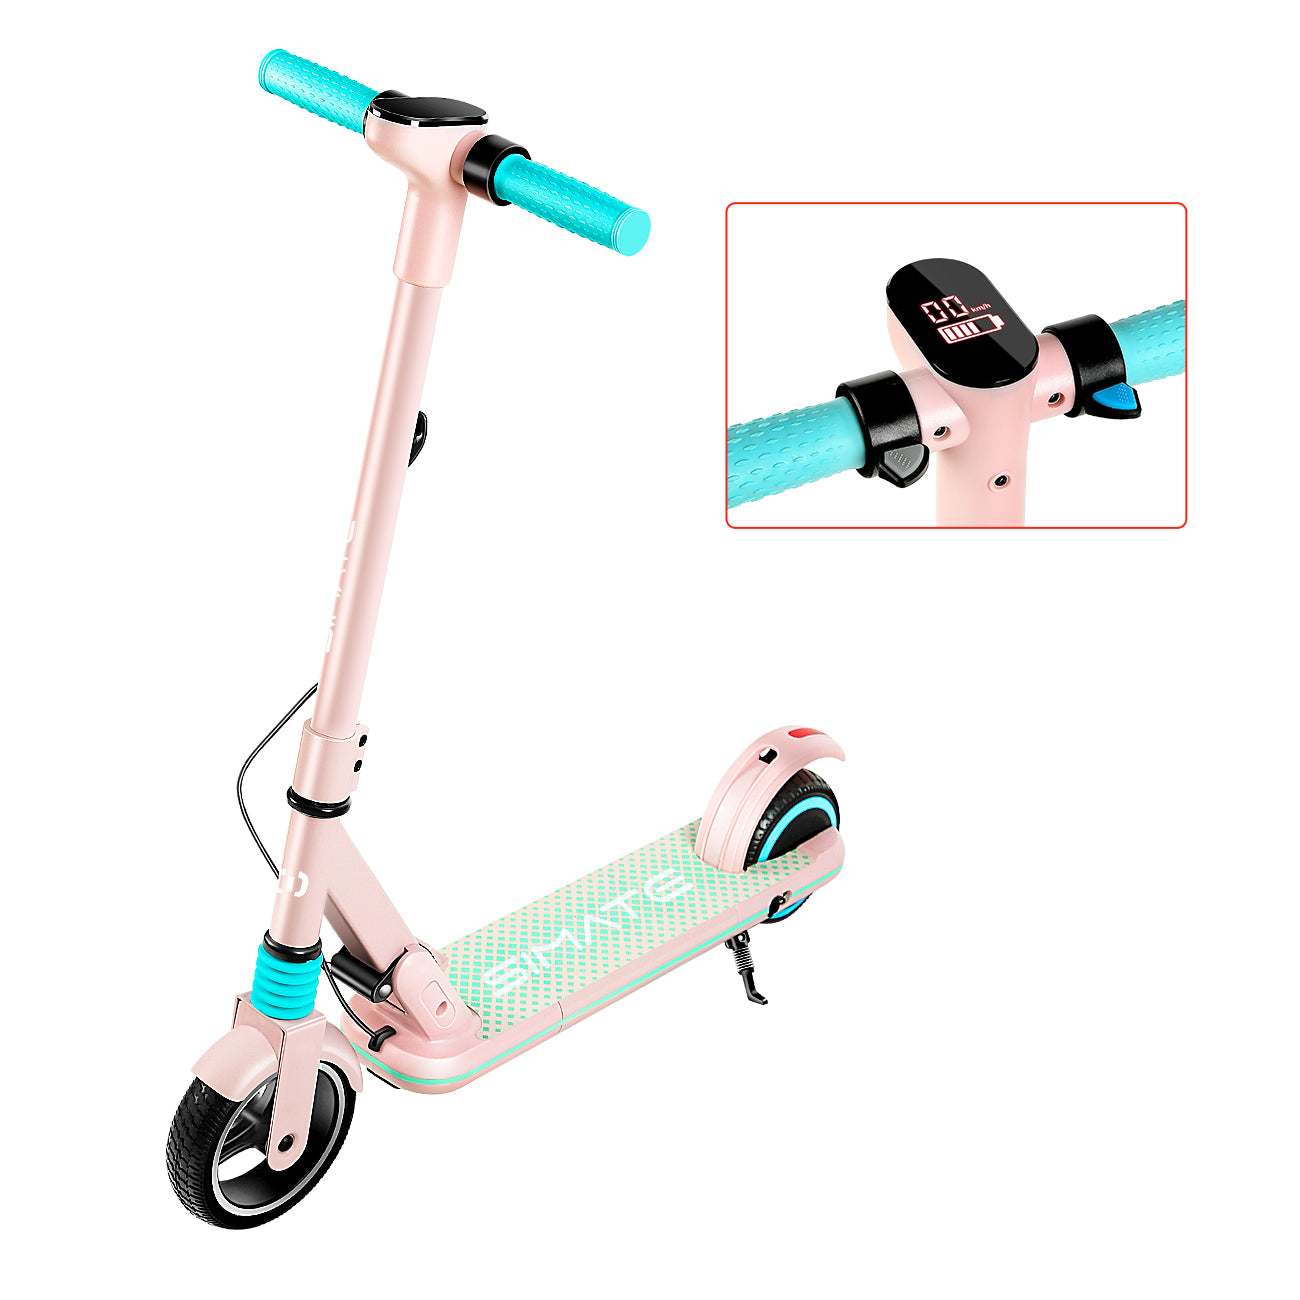 albue vegne Faret vild S1 Pro- Electric scooter for kids (Pink)